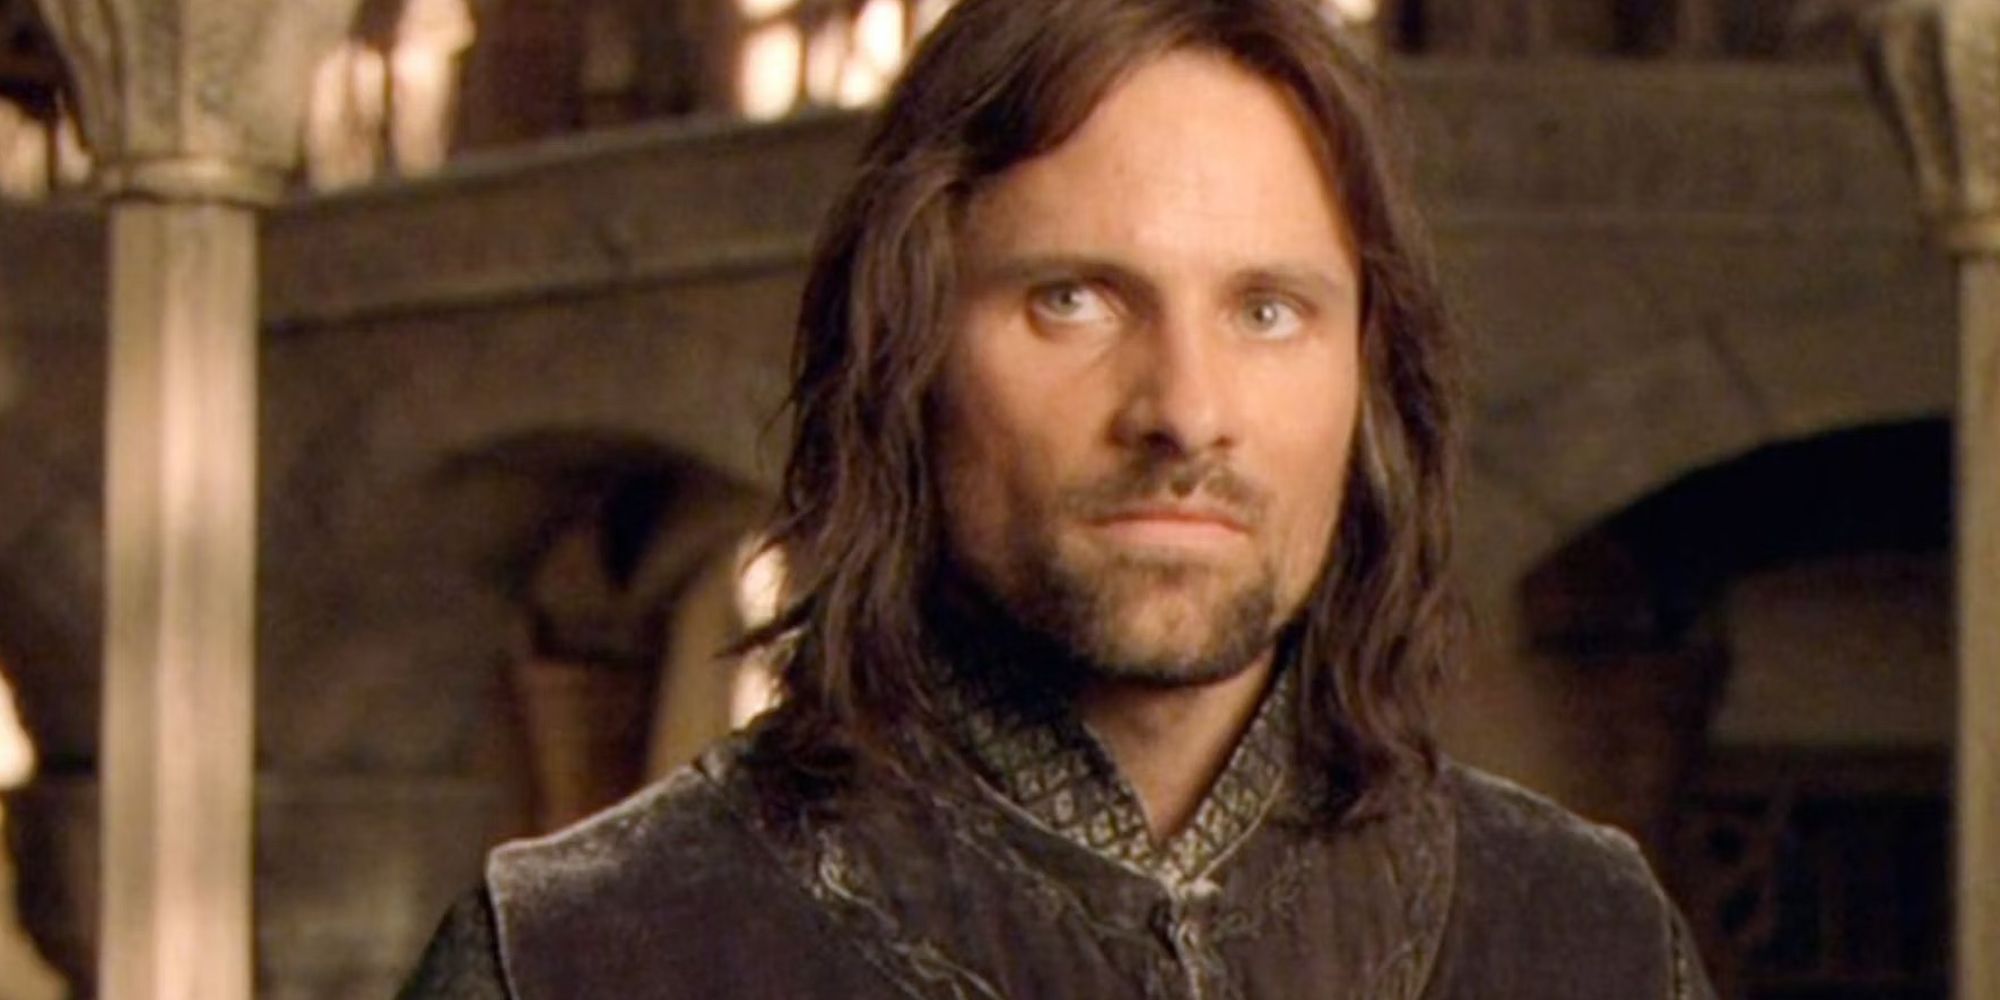 Aragorn (Viggo Mortensen) in the Fellowship of the Ring